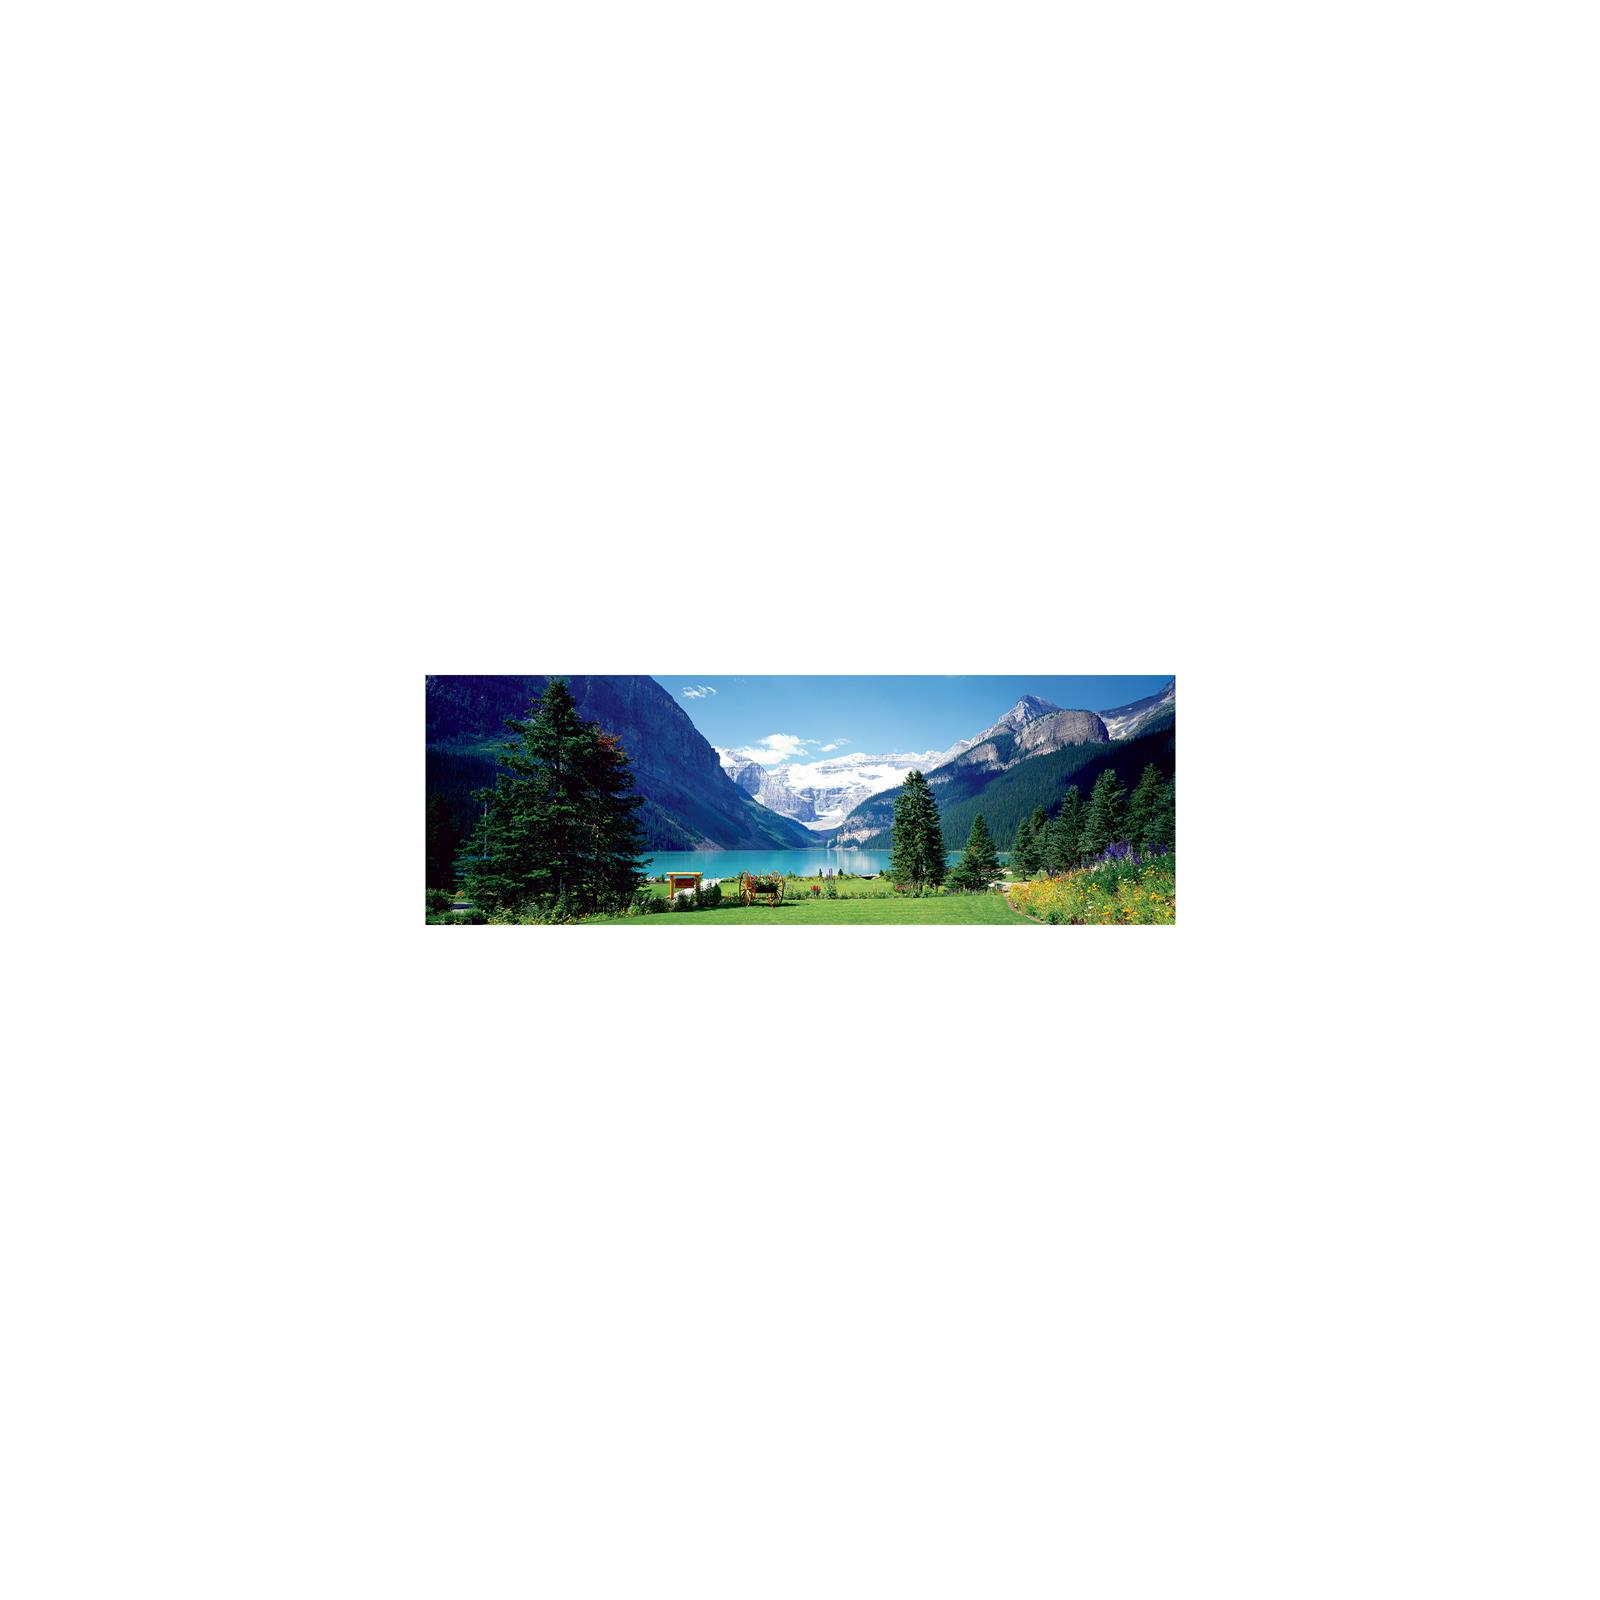 Пазл Eurographics Озеро Луїза, Канадські Скелясті гори, 1000 елементів панорамний (6010-1456) зображення 2